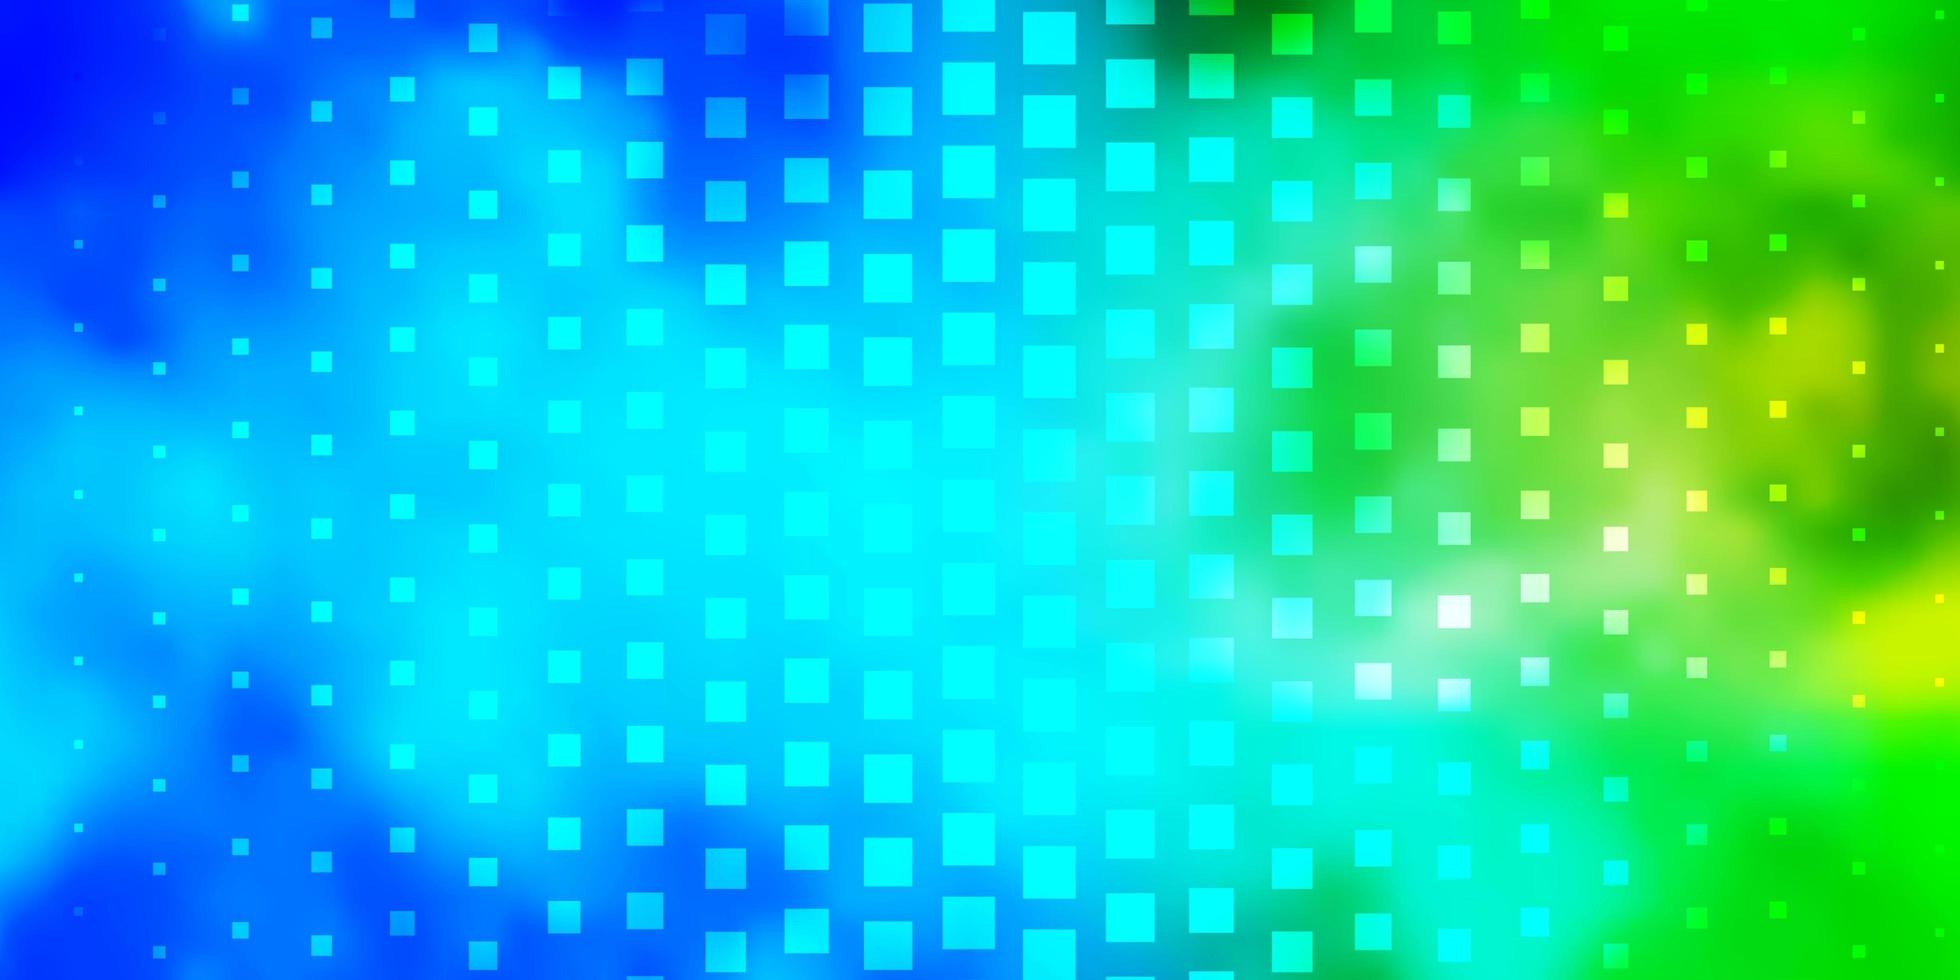 ljusblå grön vektor bakgrund med rektanglar abstrakt lutning illustration med färgglada rektanglar mönster för affärshäften broschyrer